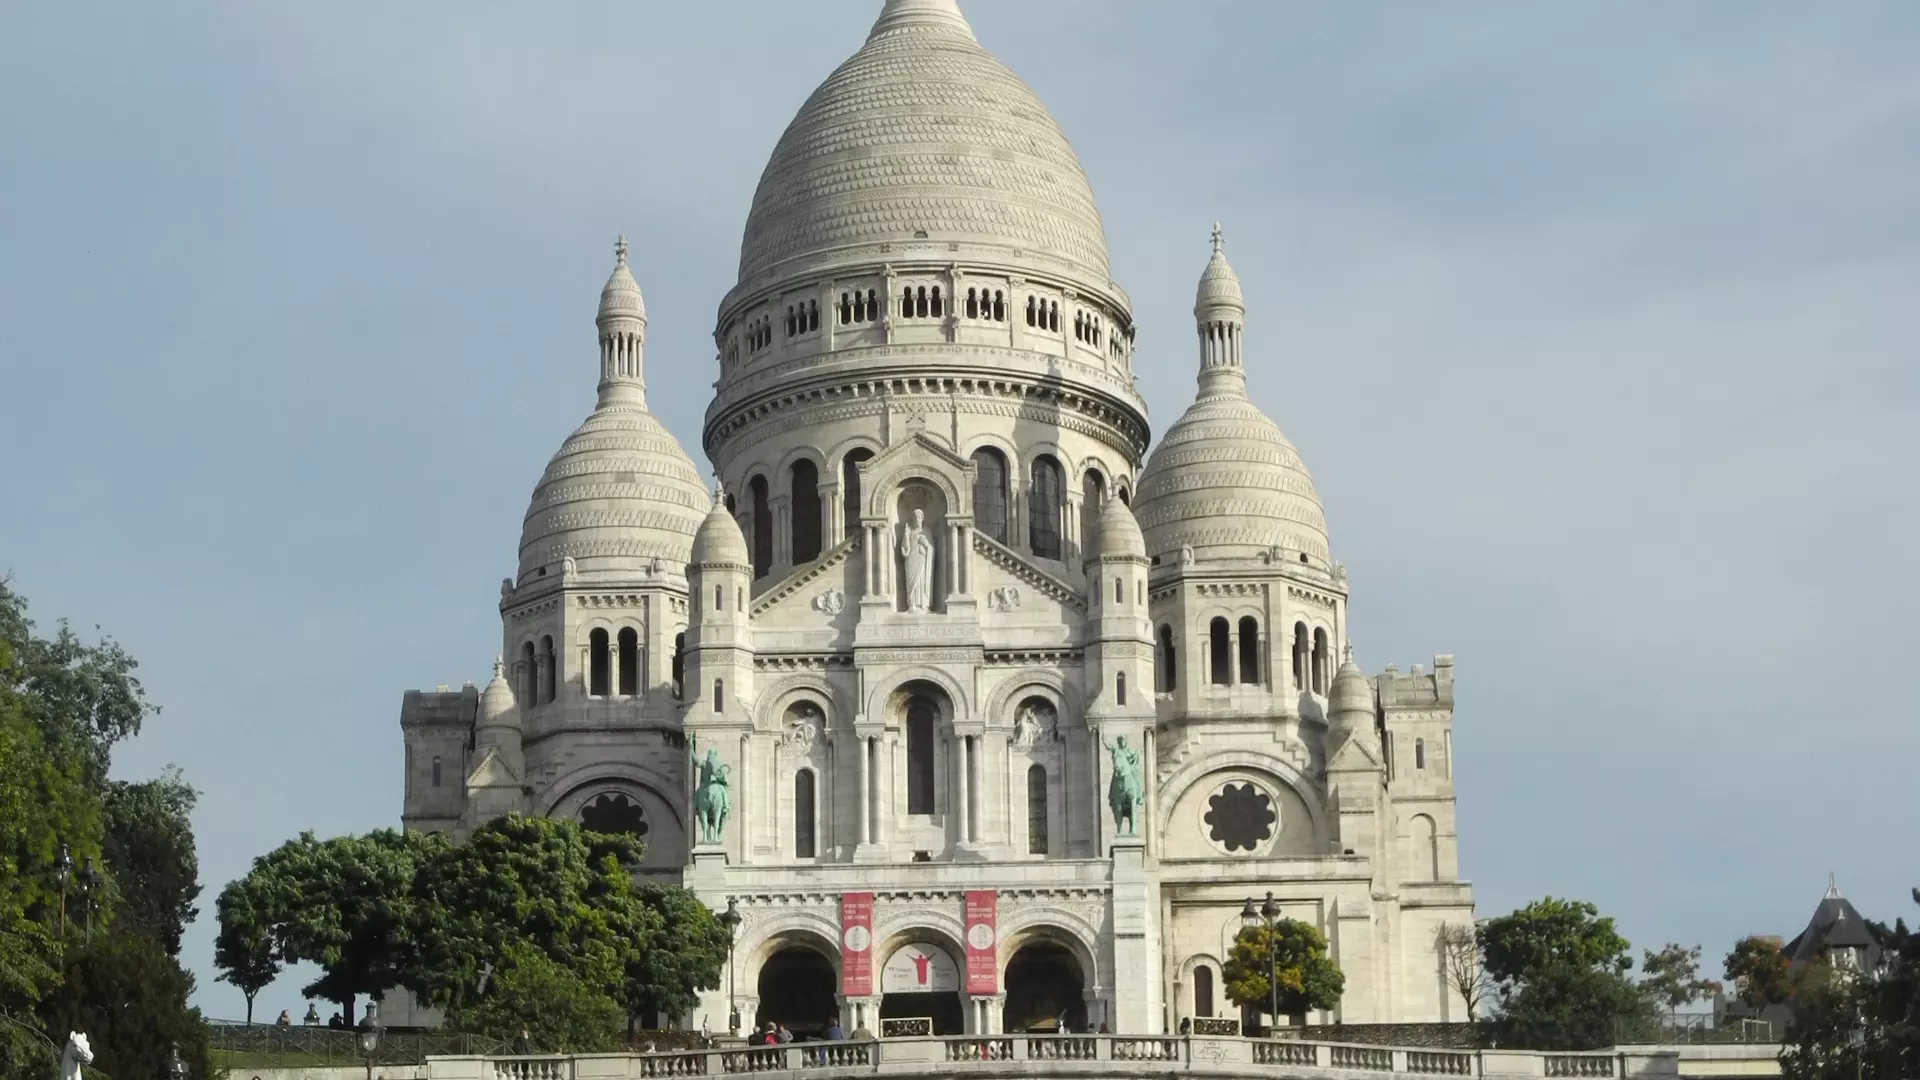 Rassemblements-Prier la Vierge Marie au Sacré-Cœur de Montmartre